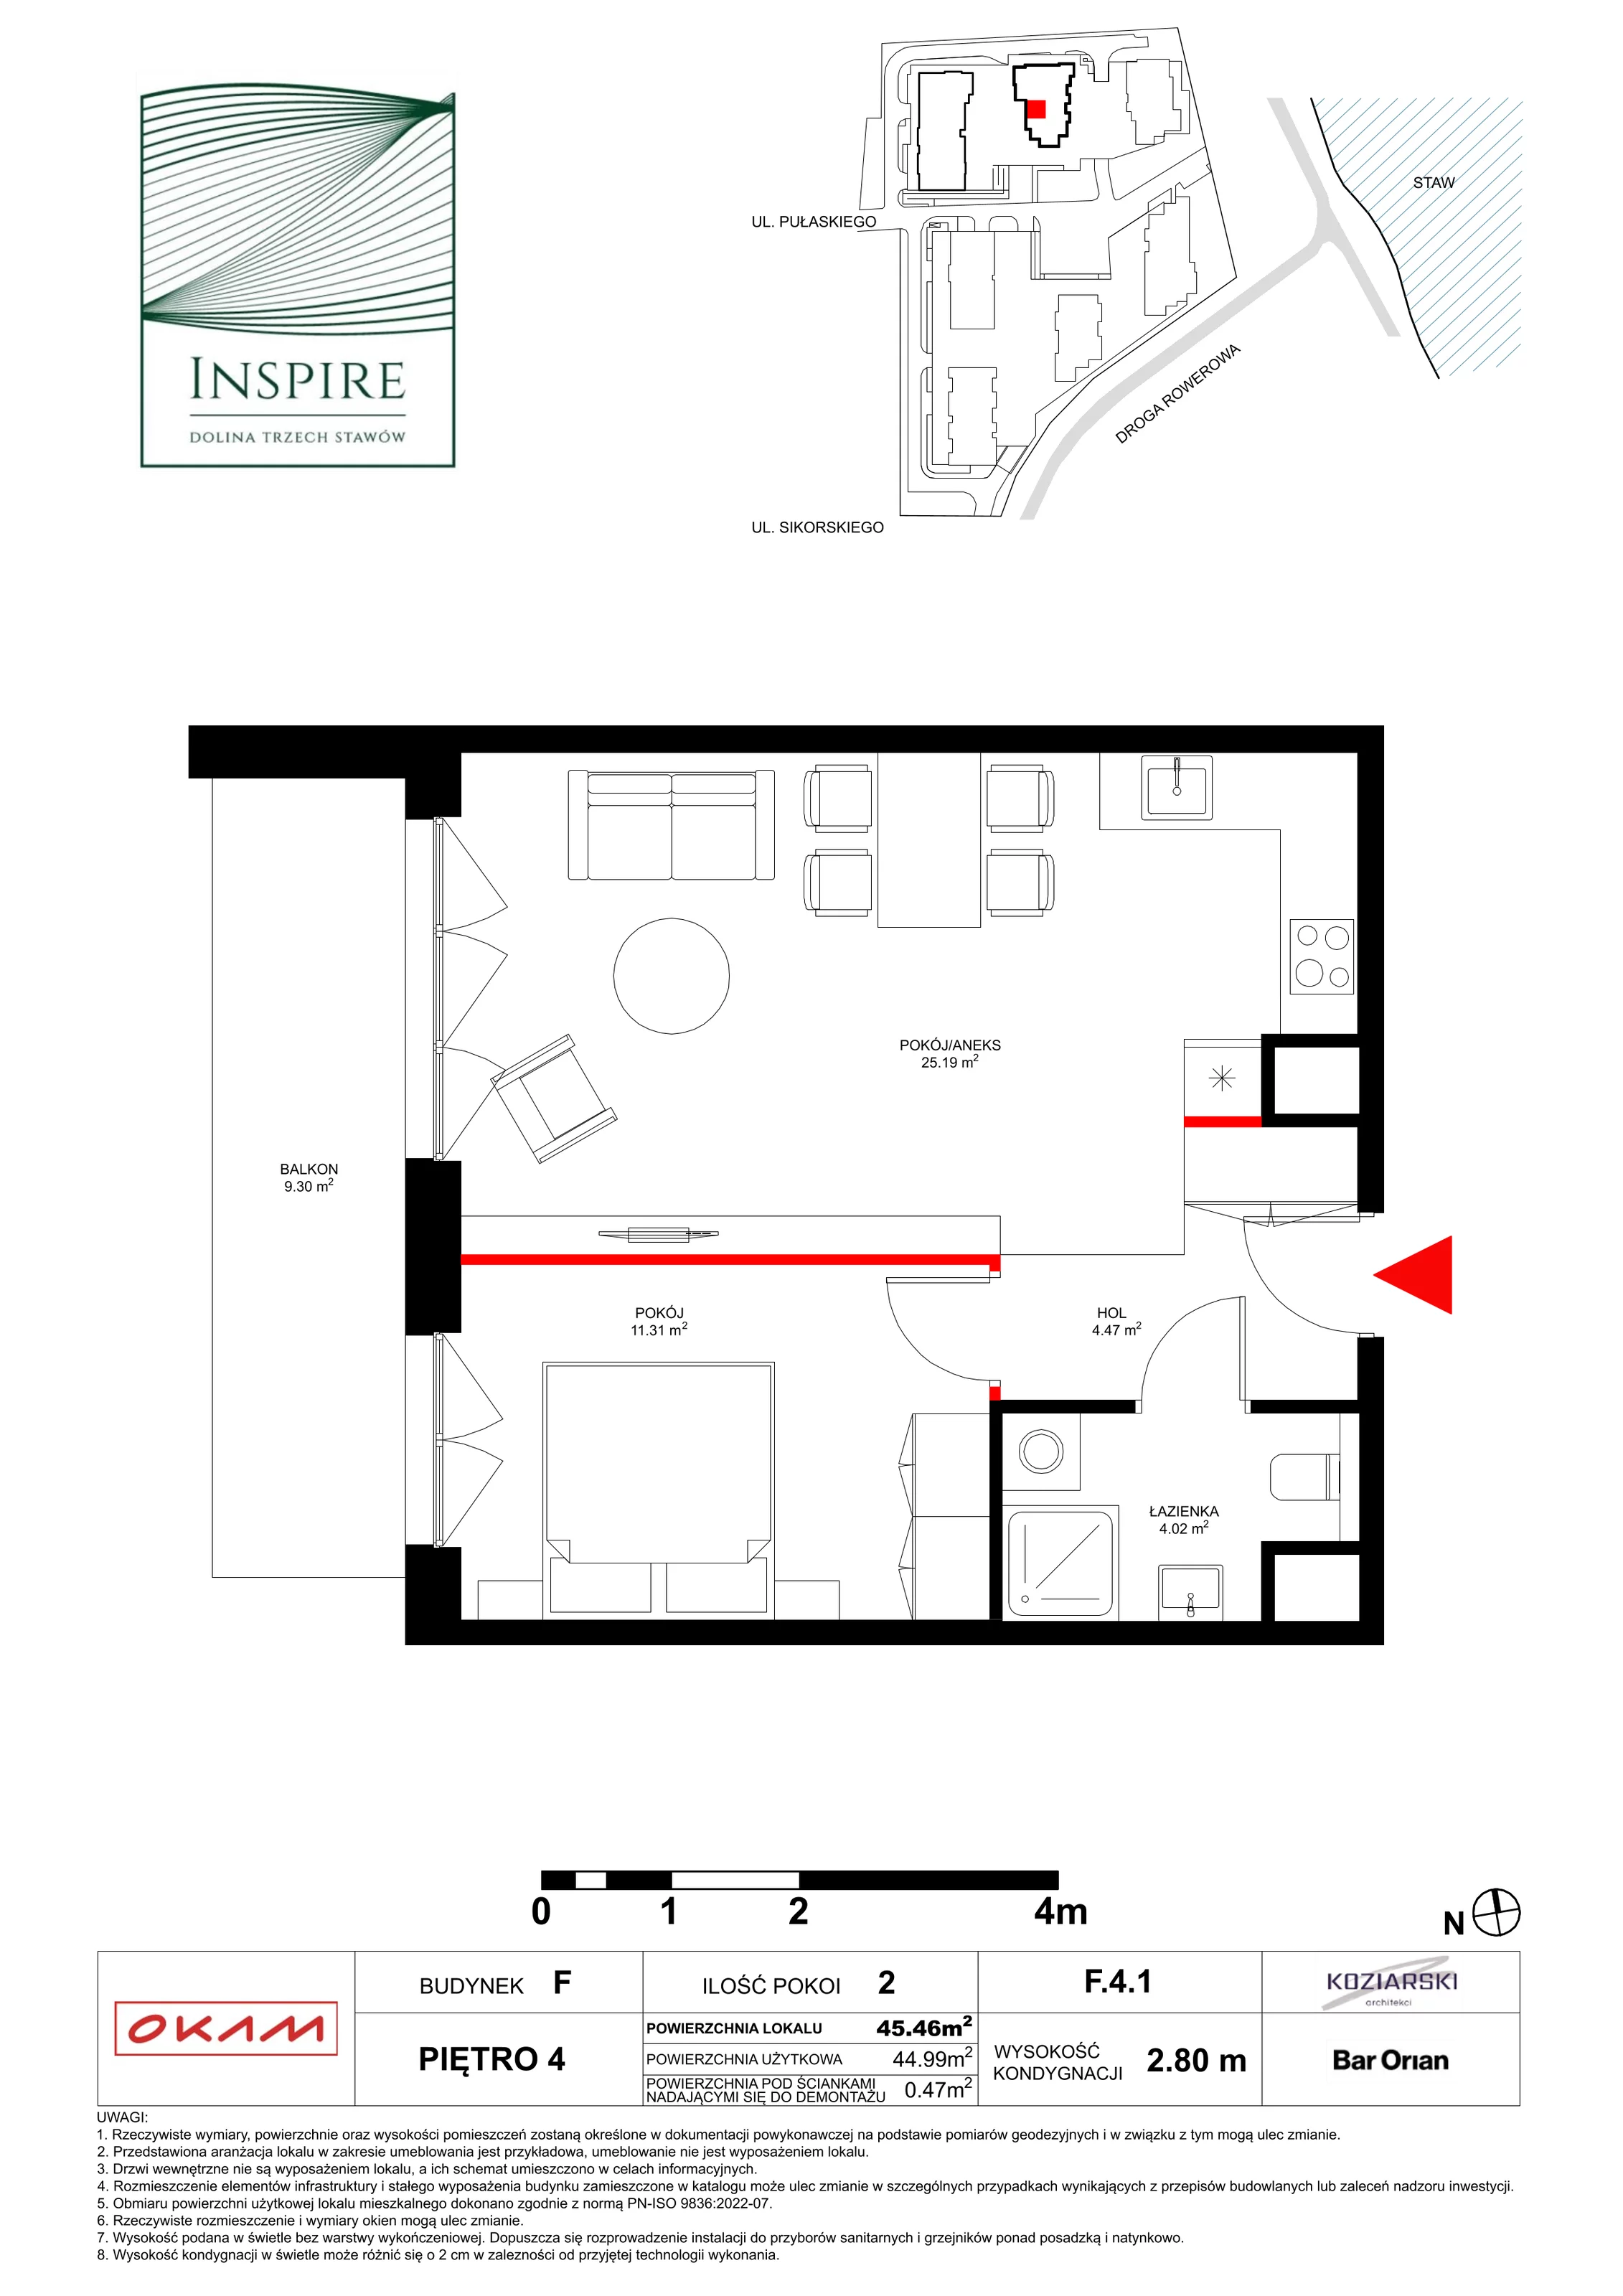 Apartament 45,02 m², piętro 4, oferta nr F.4.1, Inspire, Katowice, Osiedle Paderewskiego-Muchowiec, Dolina Trzech Stawów, ul. gen. Sikorskiego 41